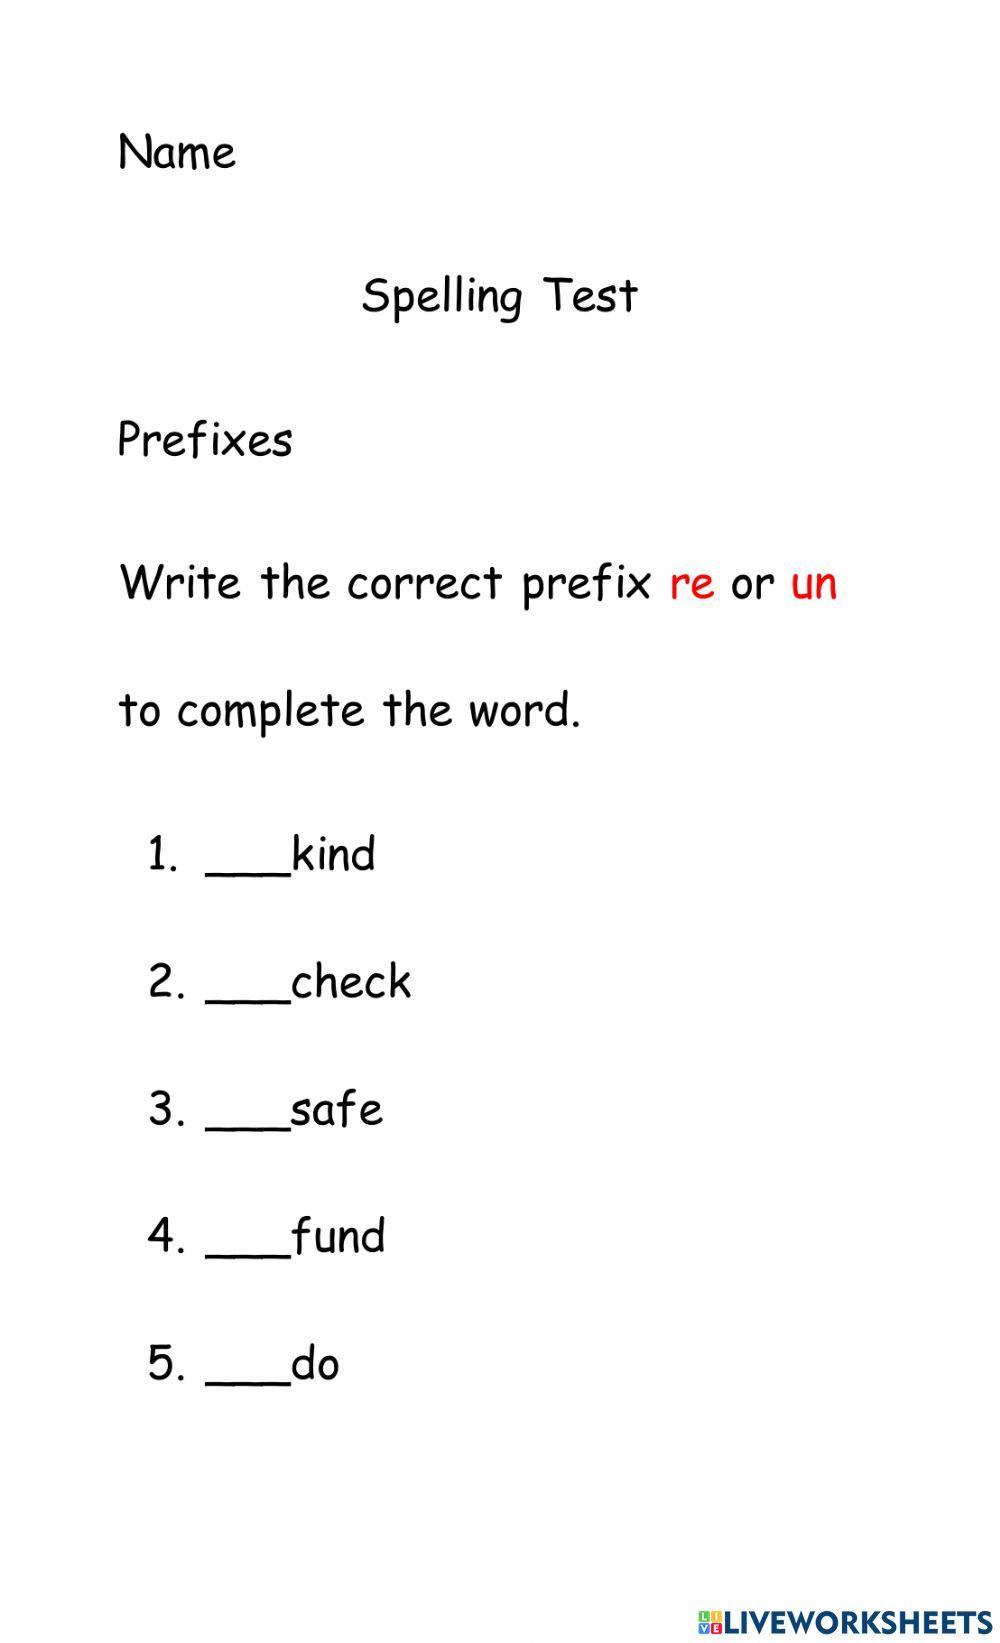 Prefix Spelling Test